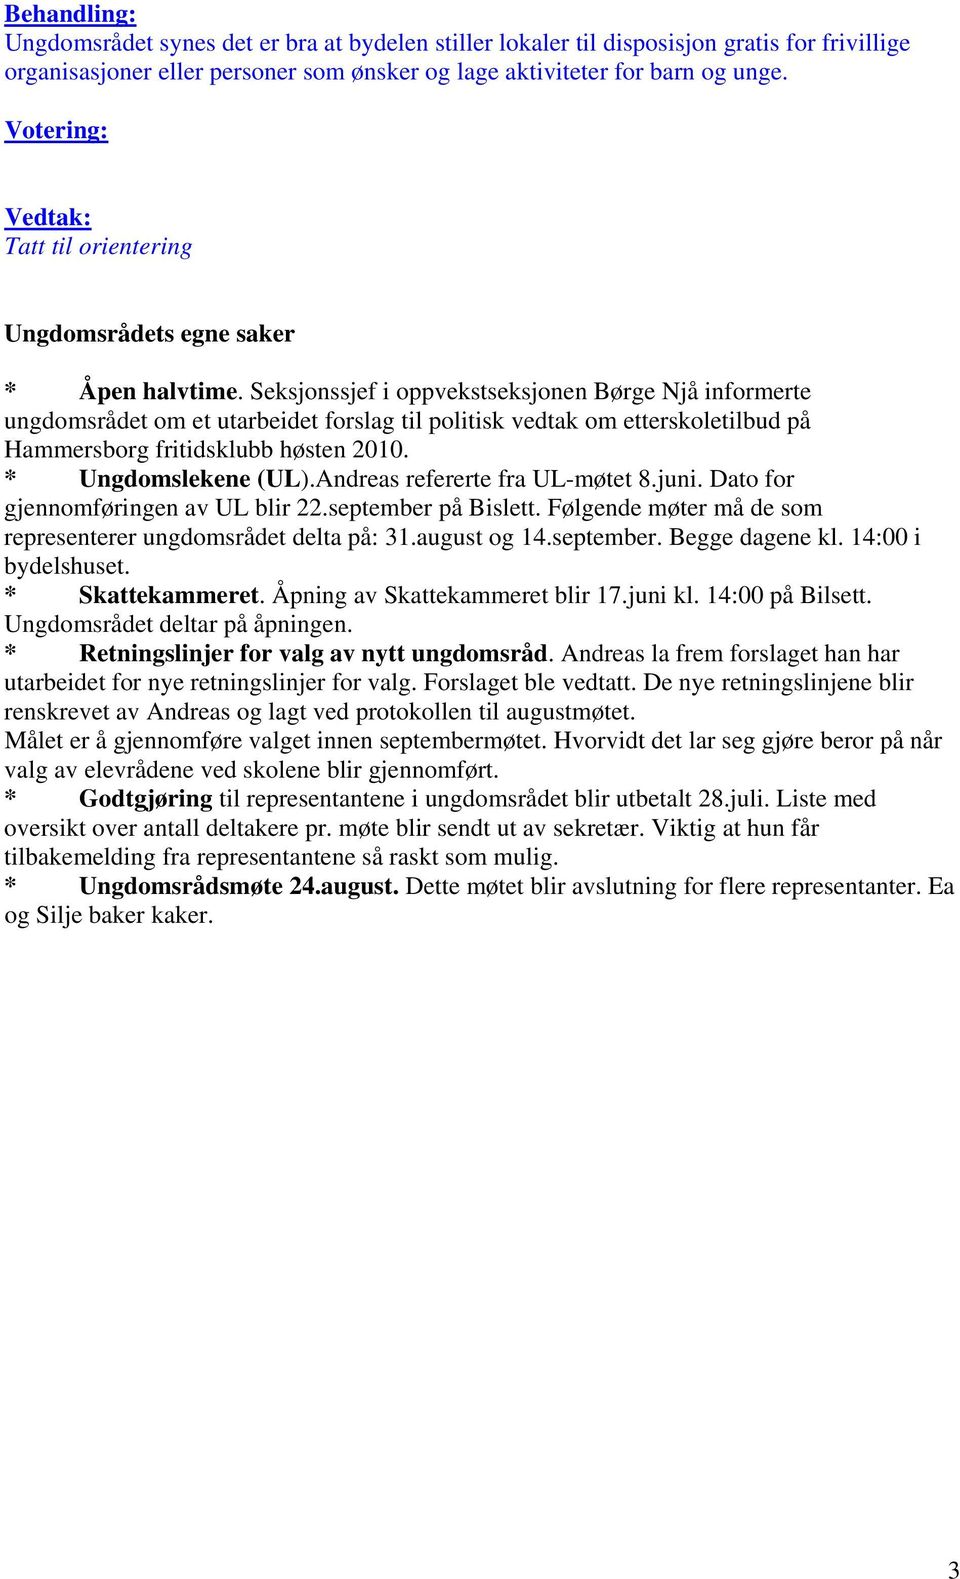 Seksjonssjef i oppvekstseksjonen Børge Njå informerte ungdomsrådet om et utarbeidet forslag til politisk vedtak om etterskoletilbud på Hammersborg fritidsklubb høsten 2010. * Ungdomslekene (UL).